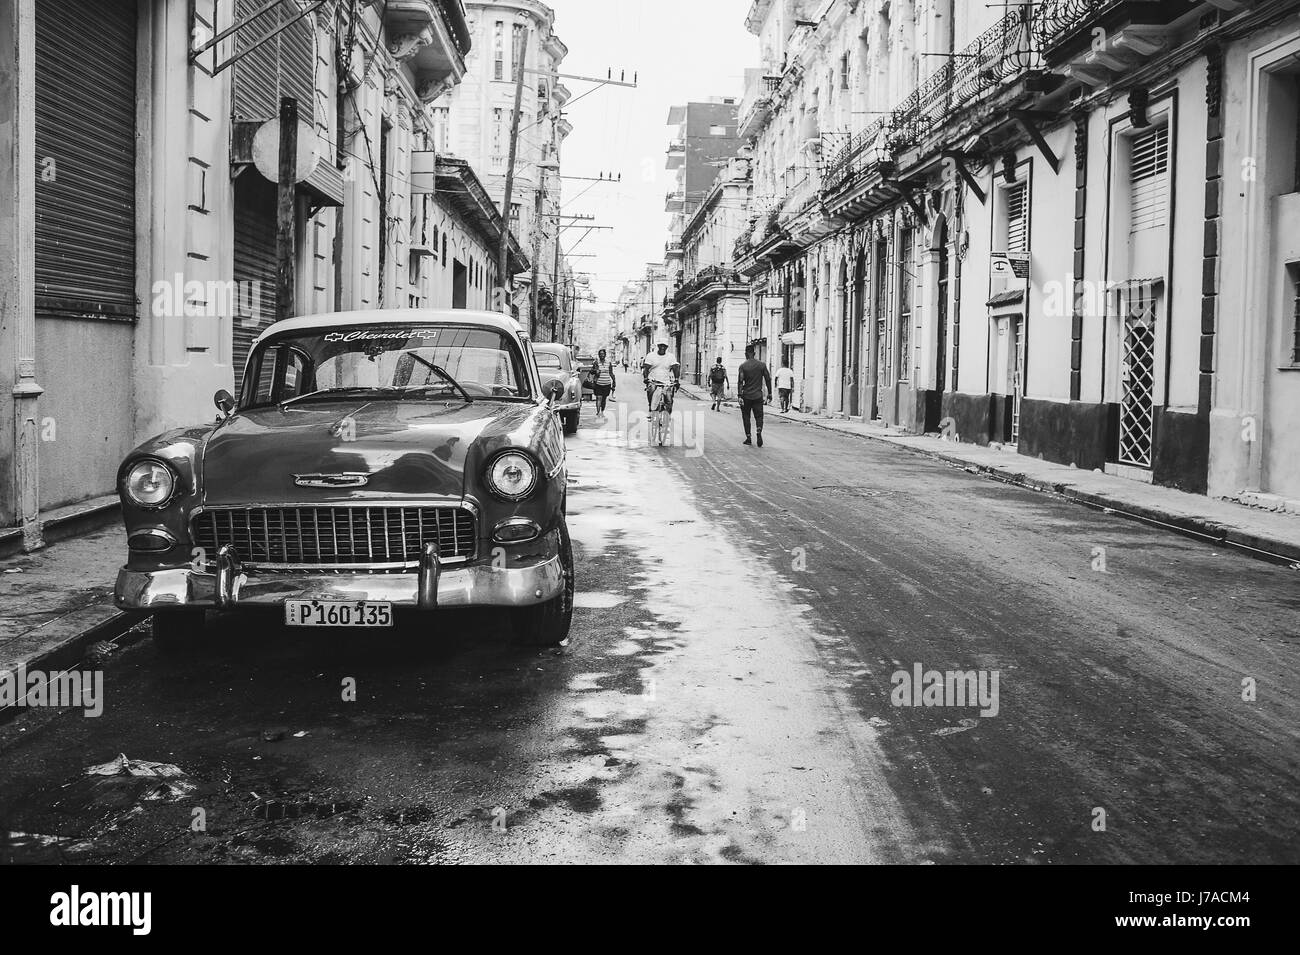 Edifici vecchi e classic car parcheggiato sulla strada della Vecchia Havana, Cuba. Monocromatico Foto Stock